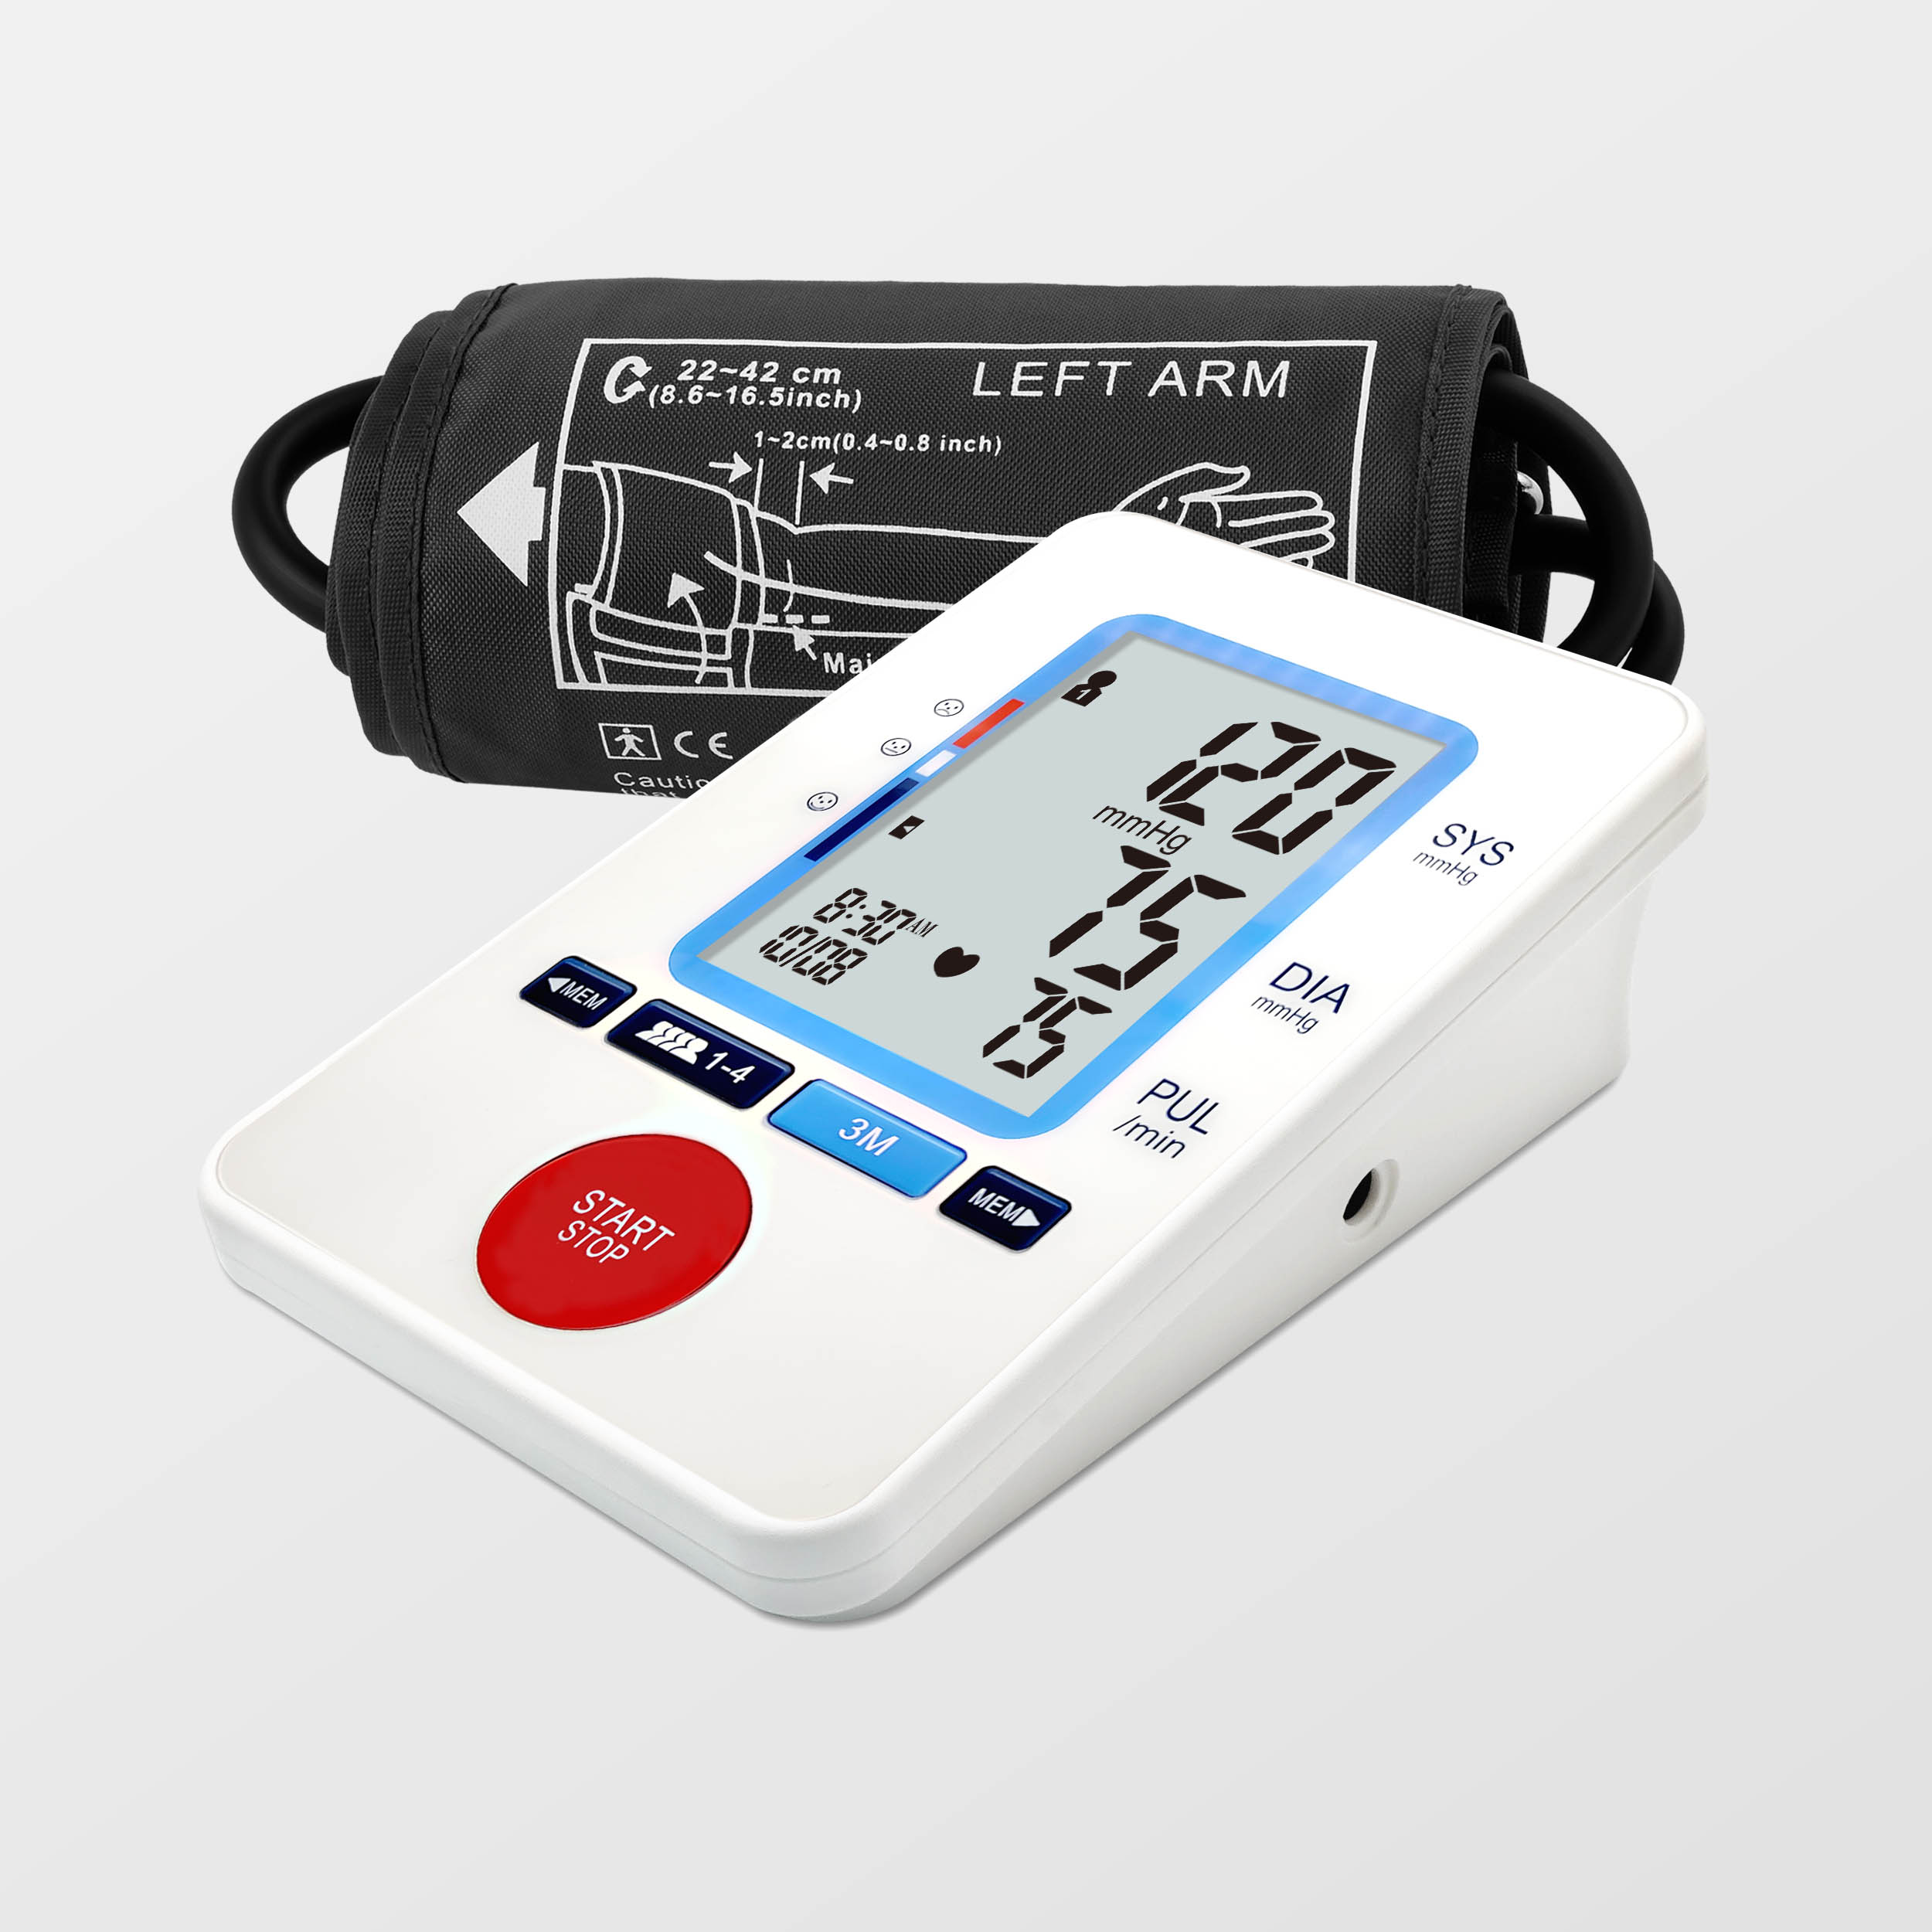 ROHS REACH chuan Upper Arm Blood Pressure Monitor Digital Tensiometro Bluetooth hmanga pawm a ni